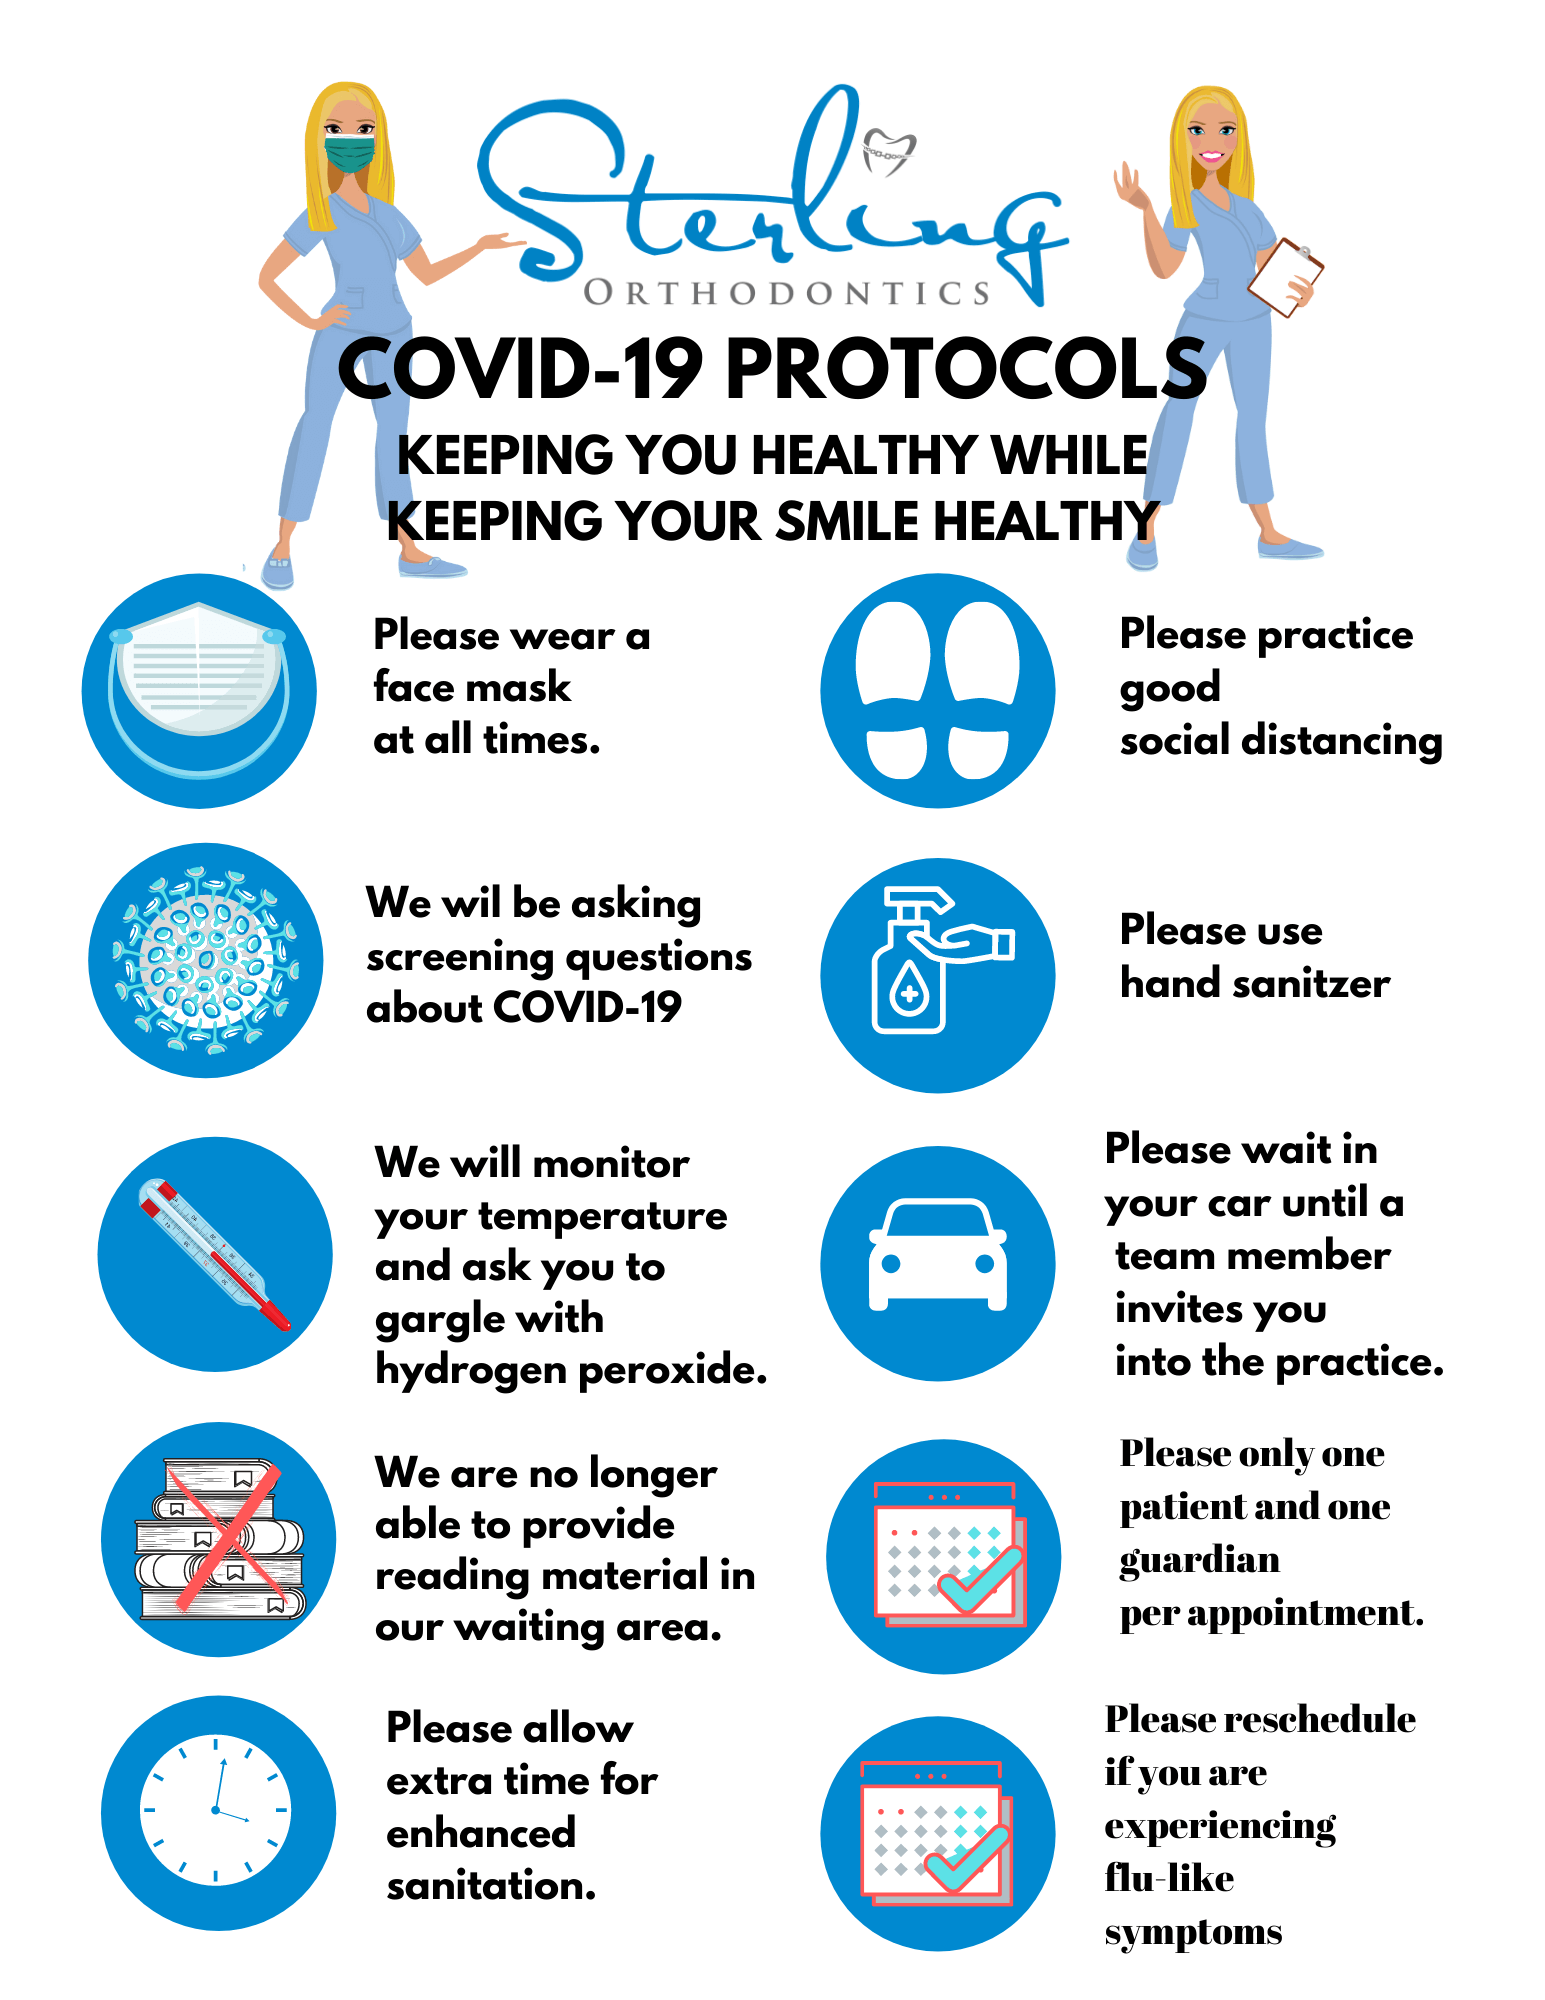 Covid 19 Protocols